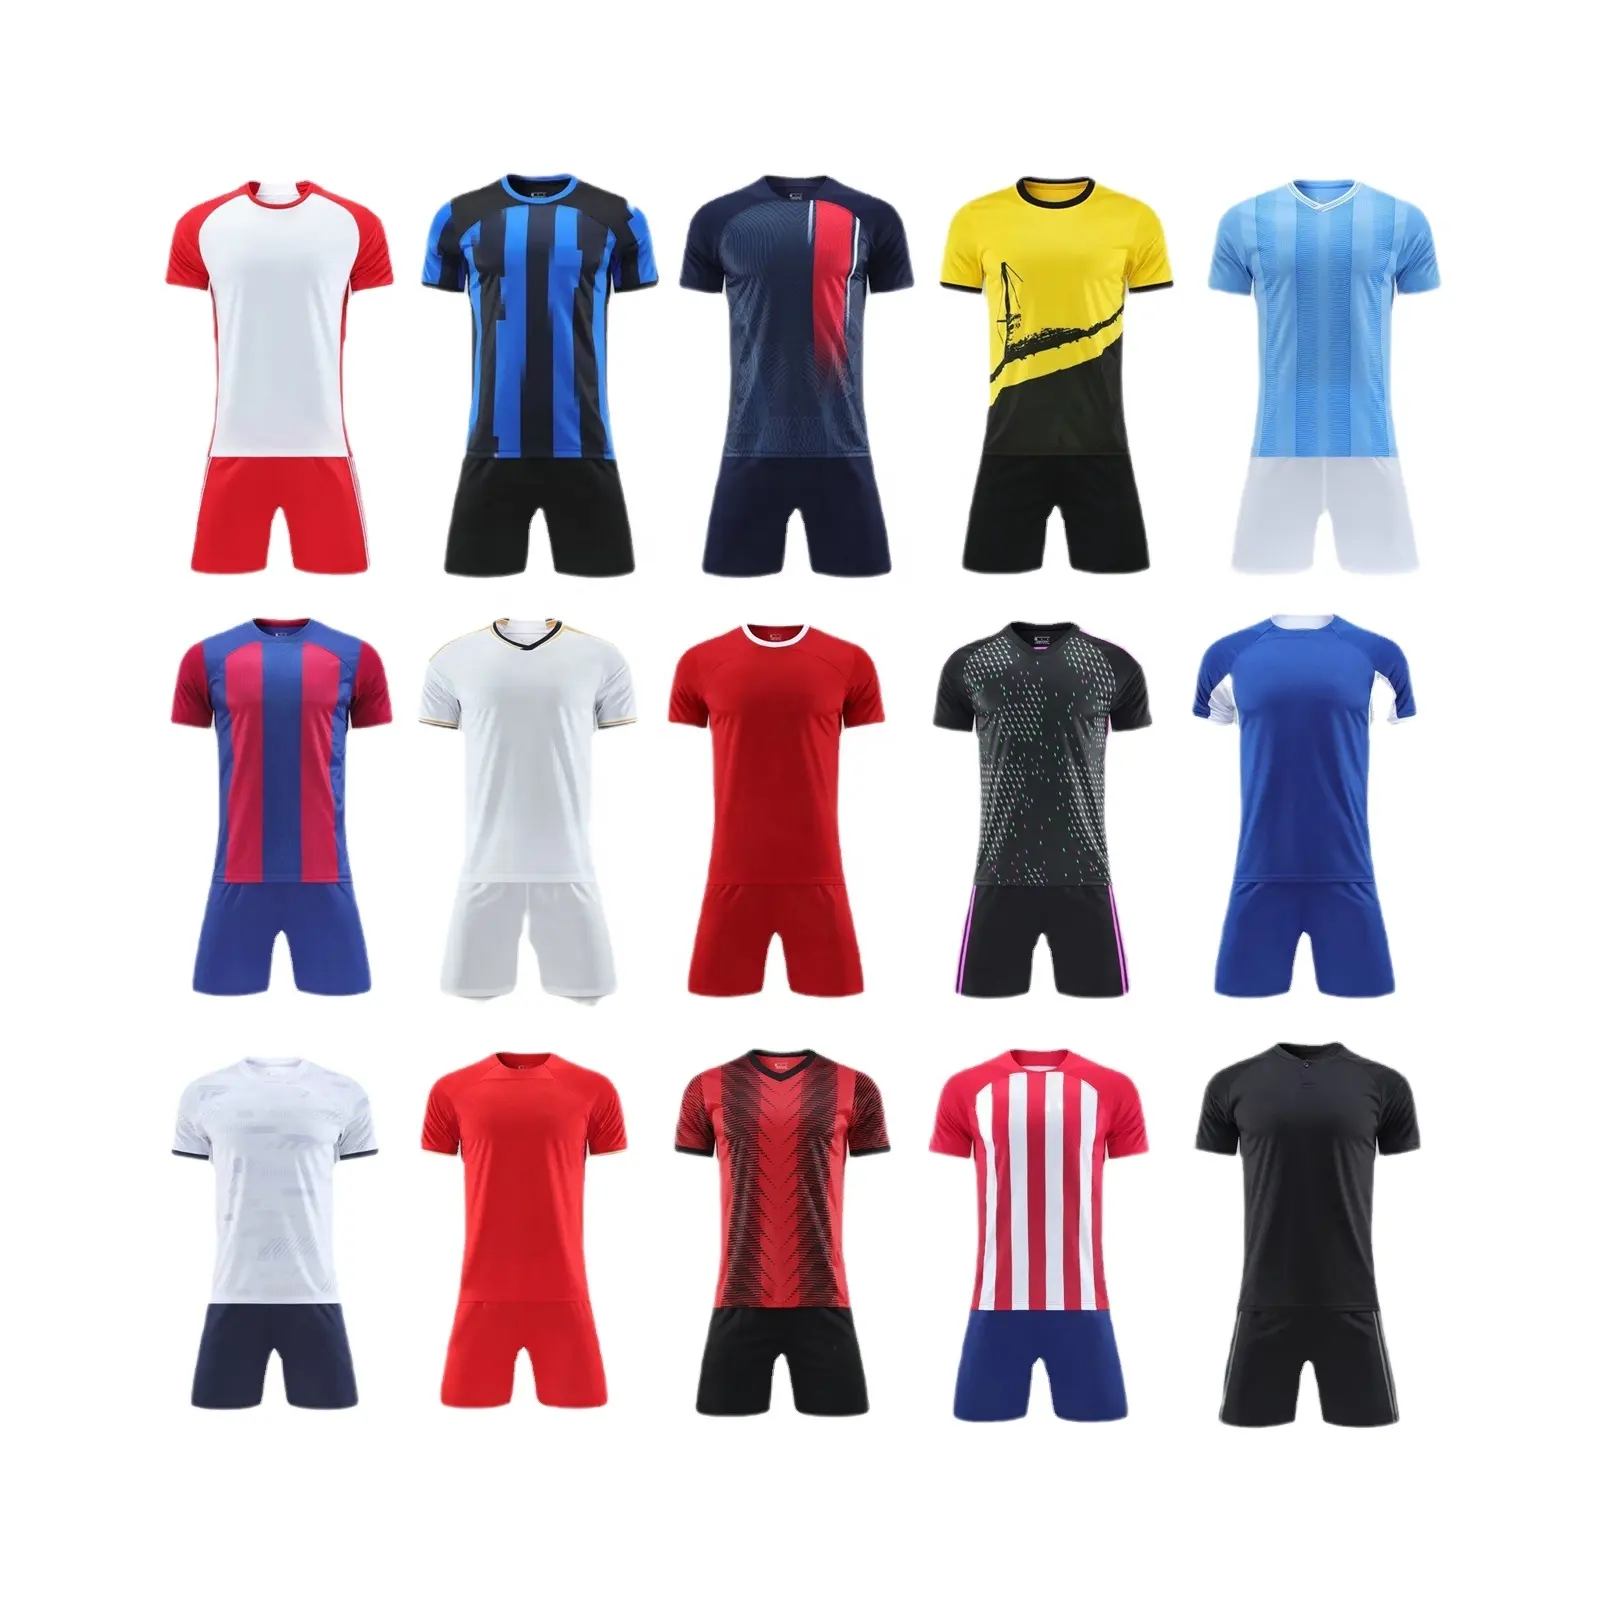 फ़ुटबॉल वर्दी कस्टम फ़ुटबॉल प्रशिक्षण कपड़े यूरोप में फ़ुटबॉल क्लब जर्सी वयस्कों और बच्चों के कपड़े छोटी आस्तीन मुद्रण